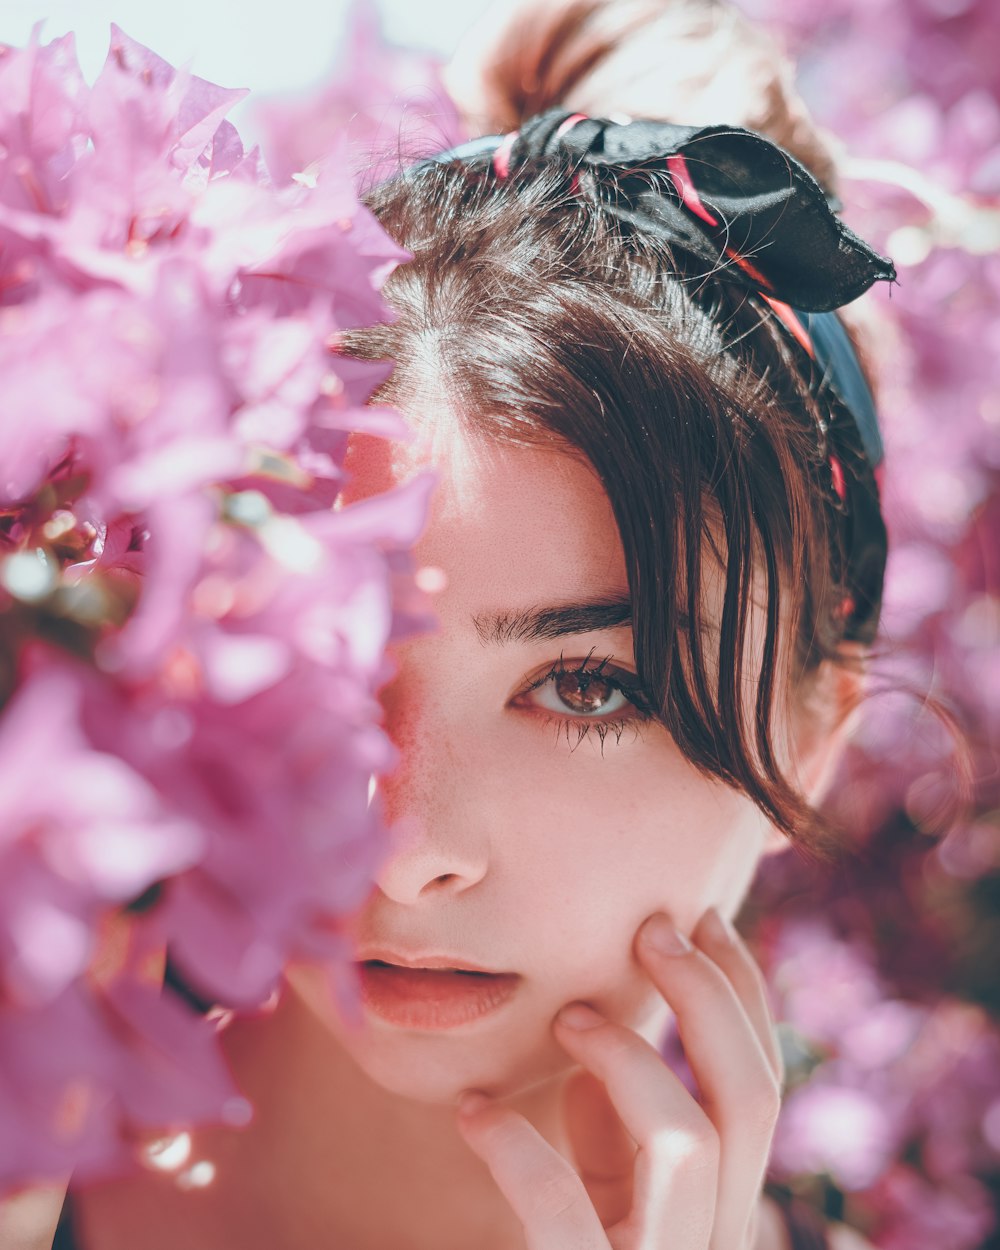 Mujer escondida en flores de pétalos rosados